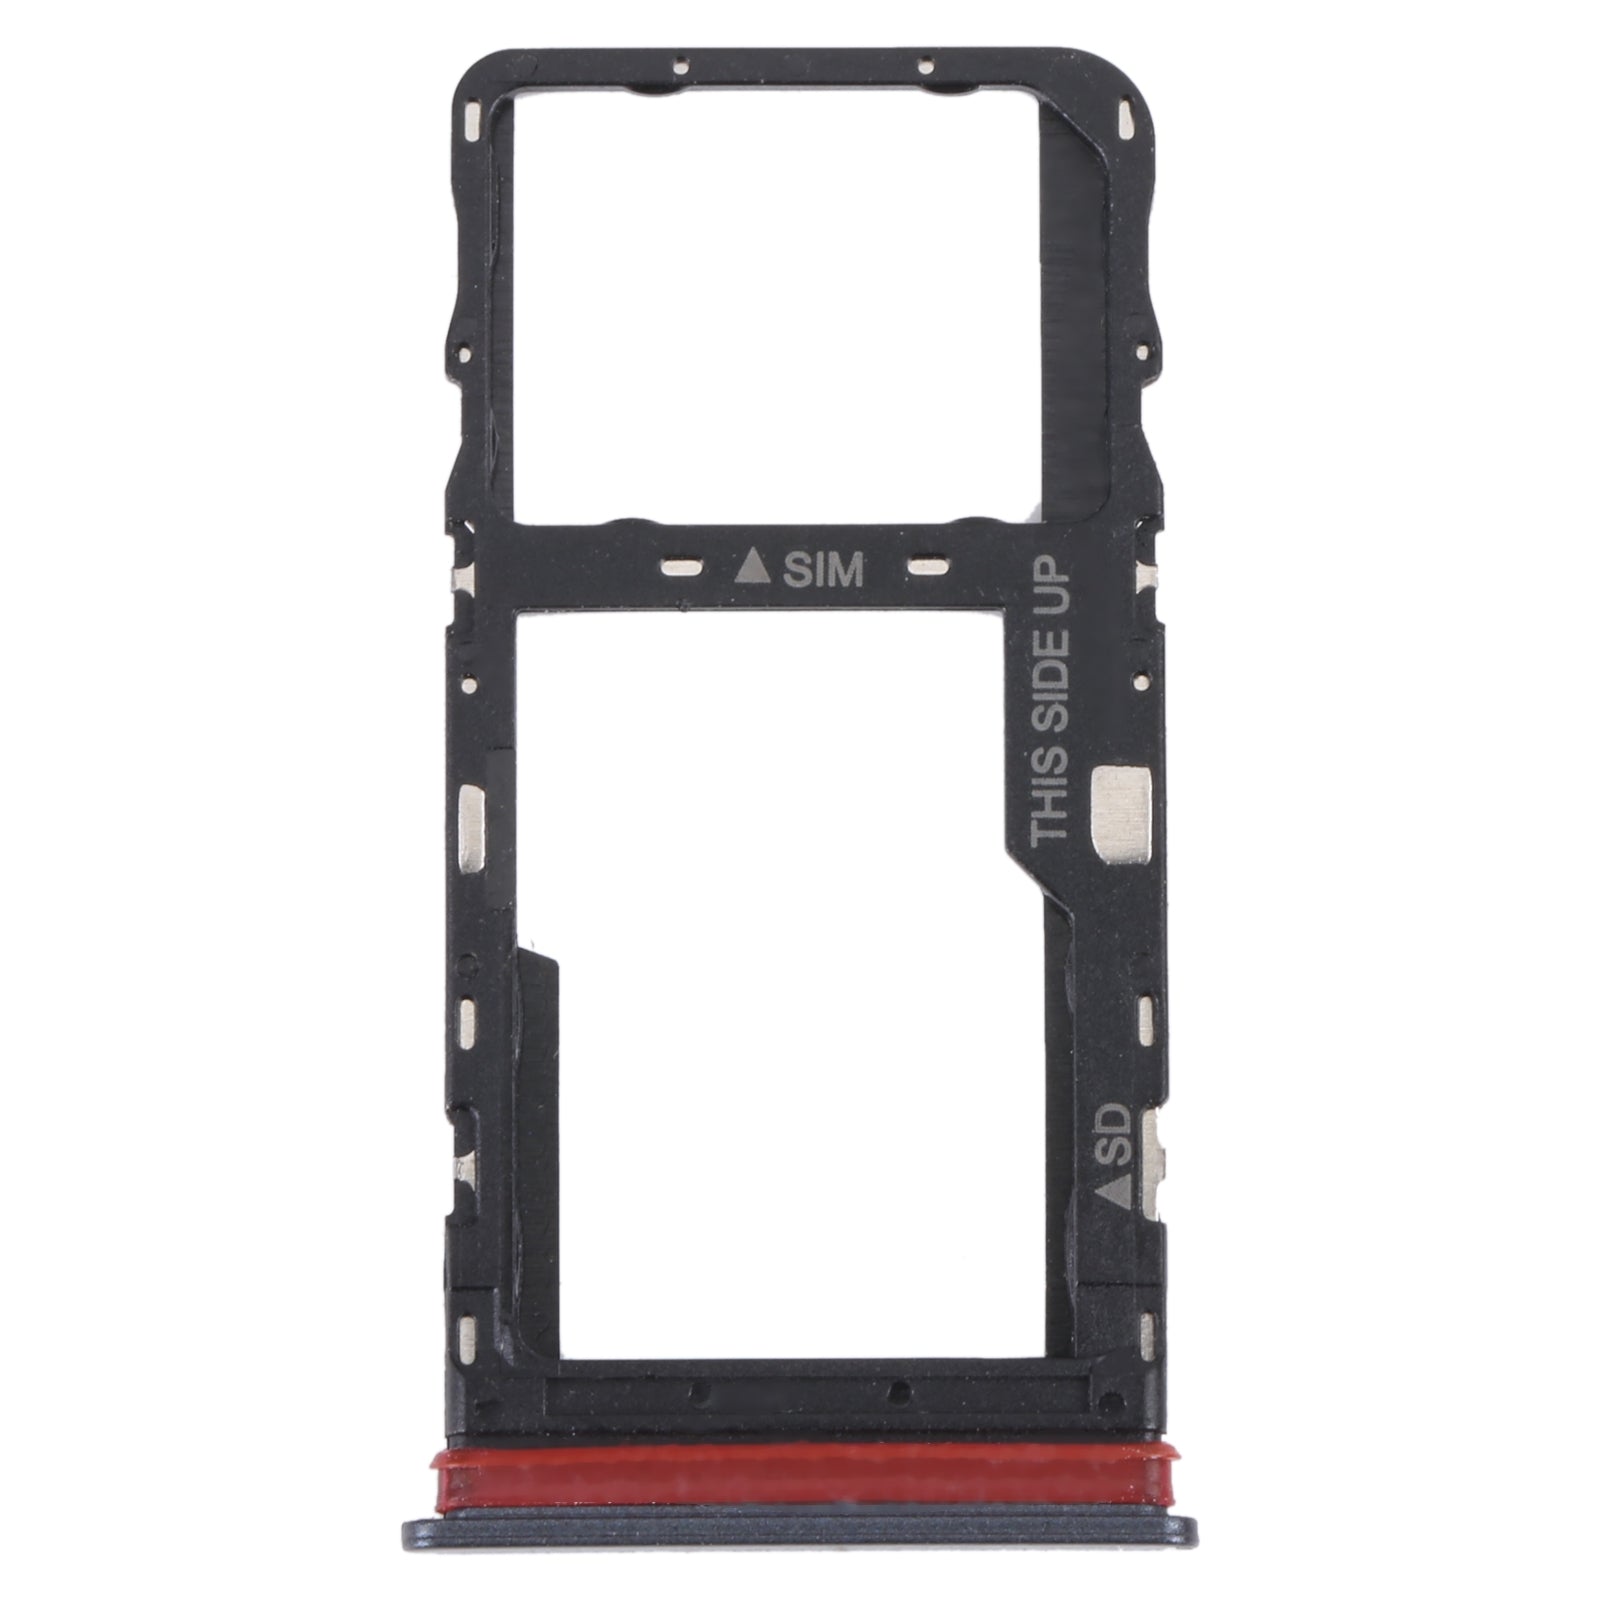 SIM / Micro SD Holder Tray TCL 30 V 5G Black